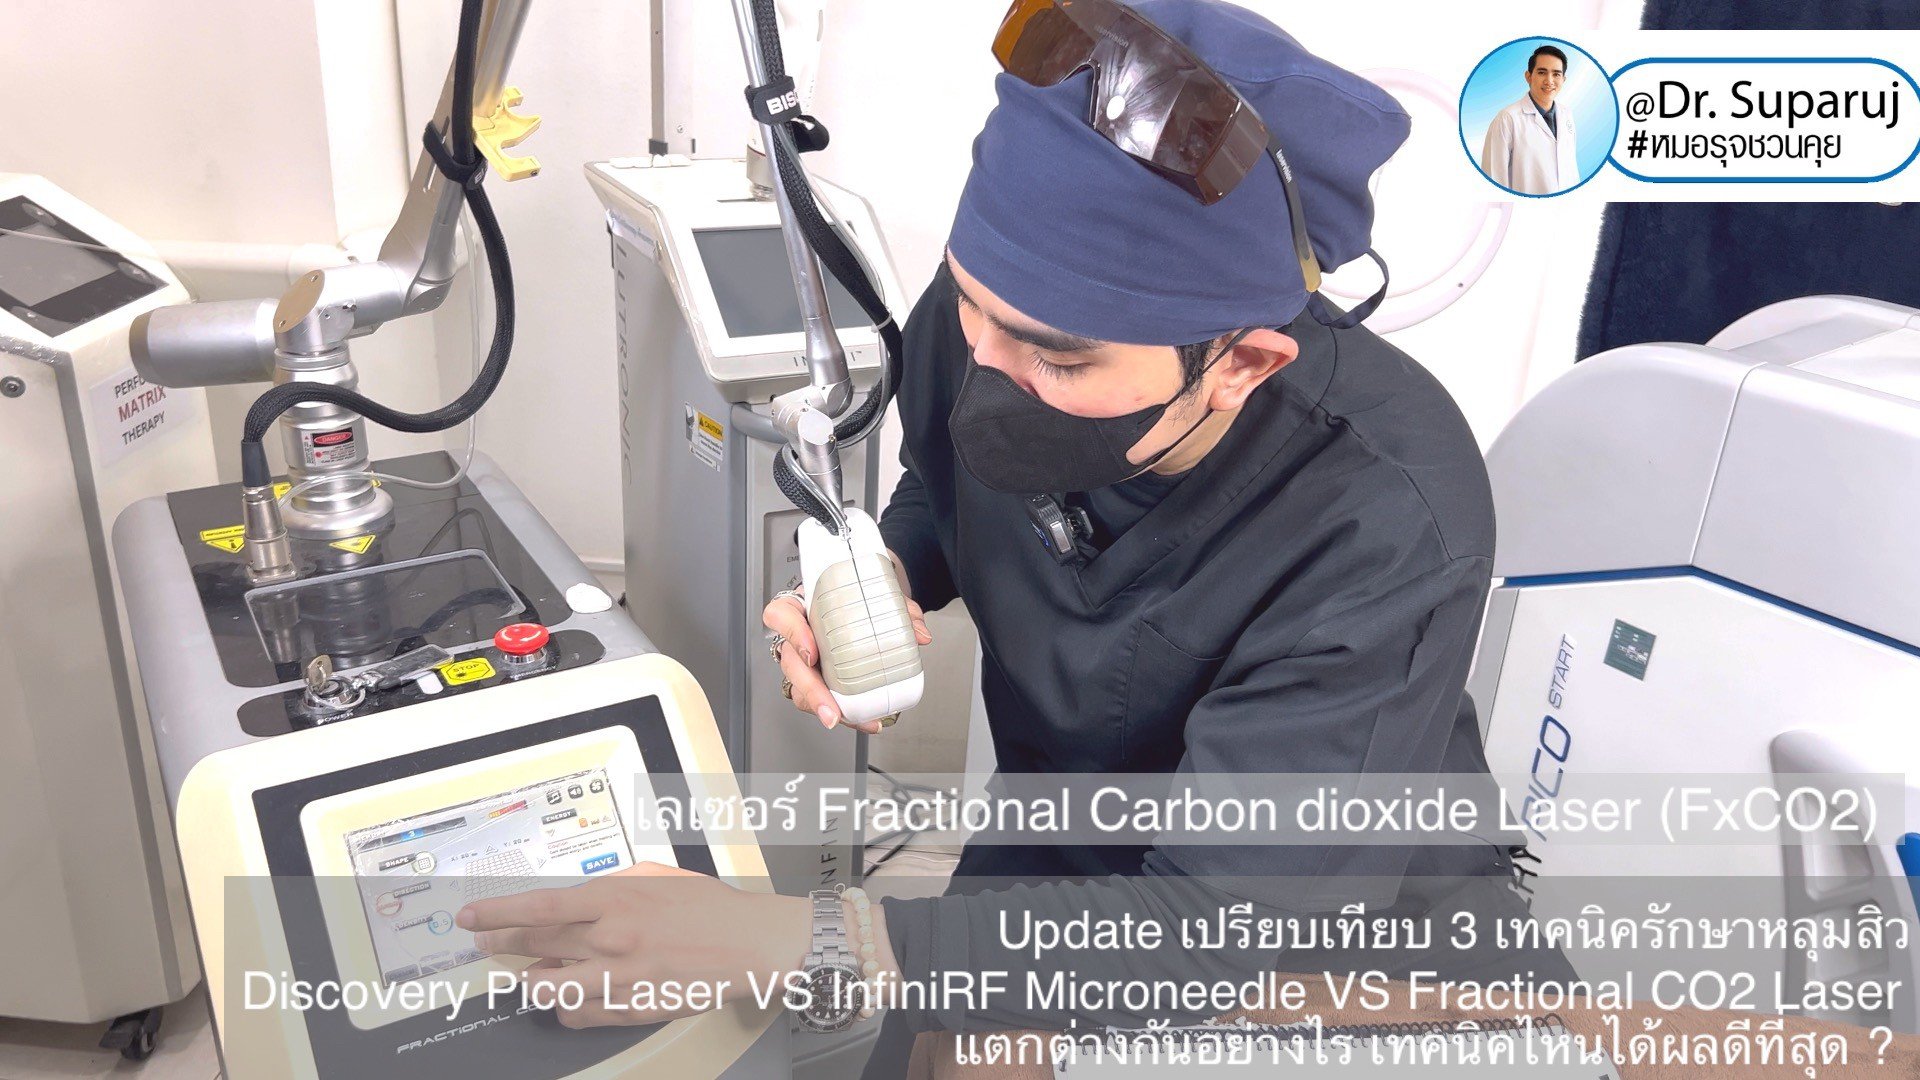 ผลการรักษาหลุมสิวด้วย Picosecond Laser VS InfiniRF Microneedle แตกต่างกันอย่างไร อะไรมีประสิทธิภาพดีกว่า ?